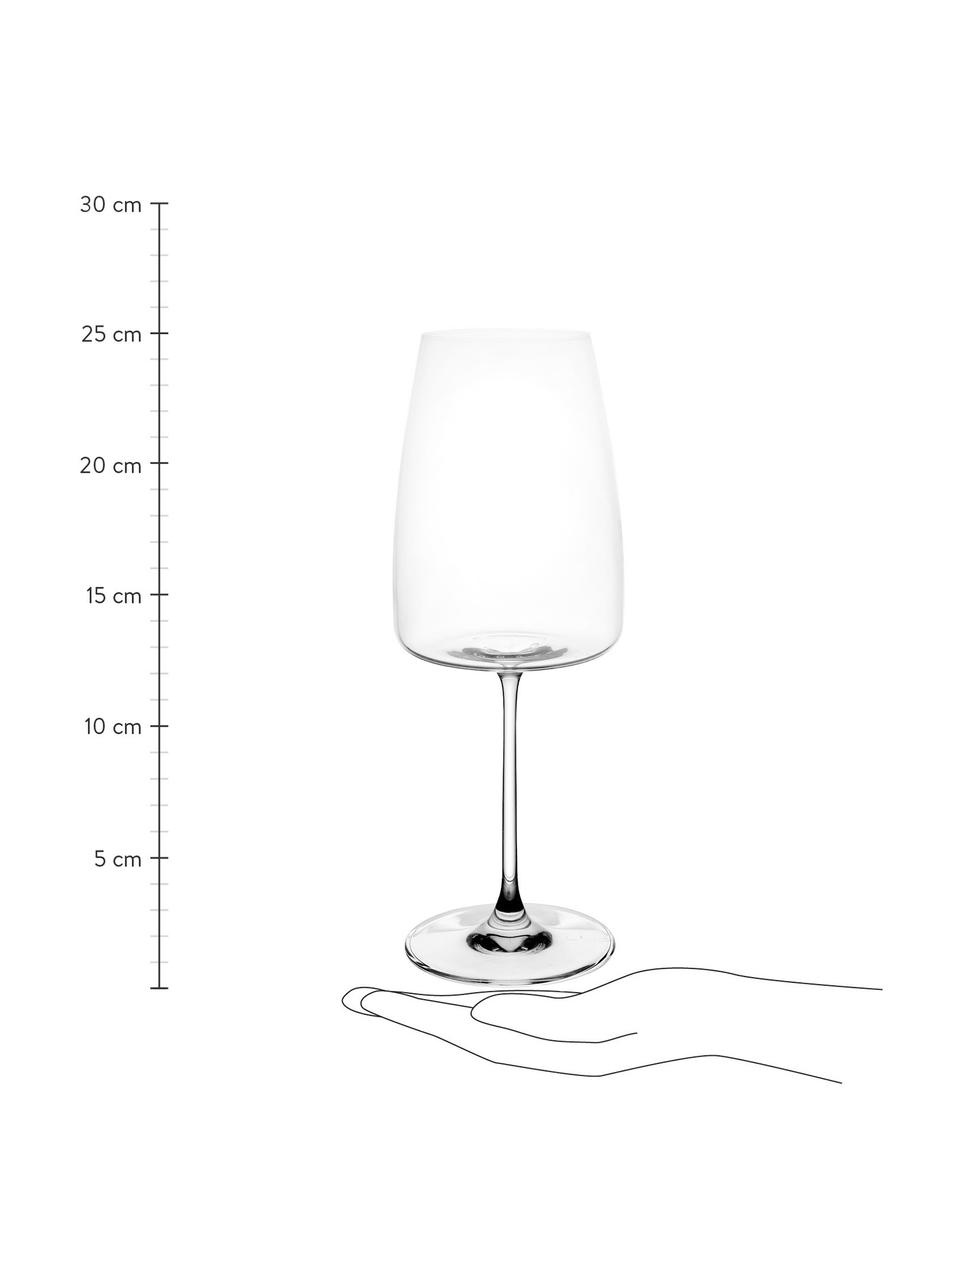 Křišťálová sklenice na červené víno Moinet, 6 ks, Křišťál, Transparentní, Ø 9 x V 23 cm, 500 ml